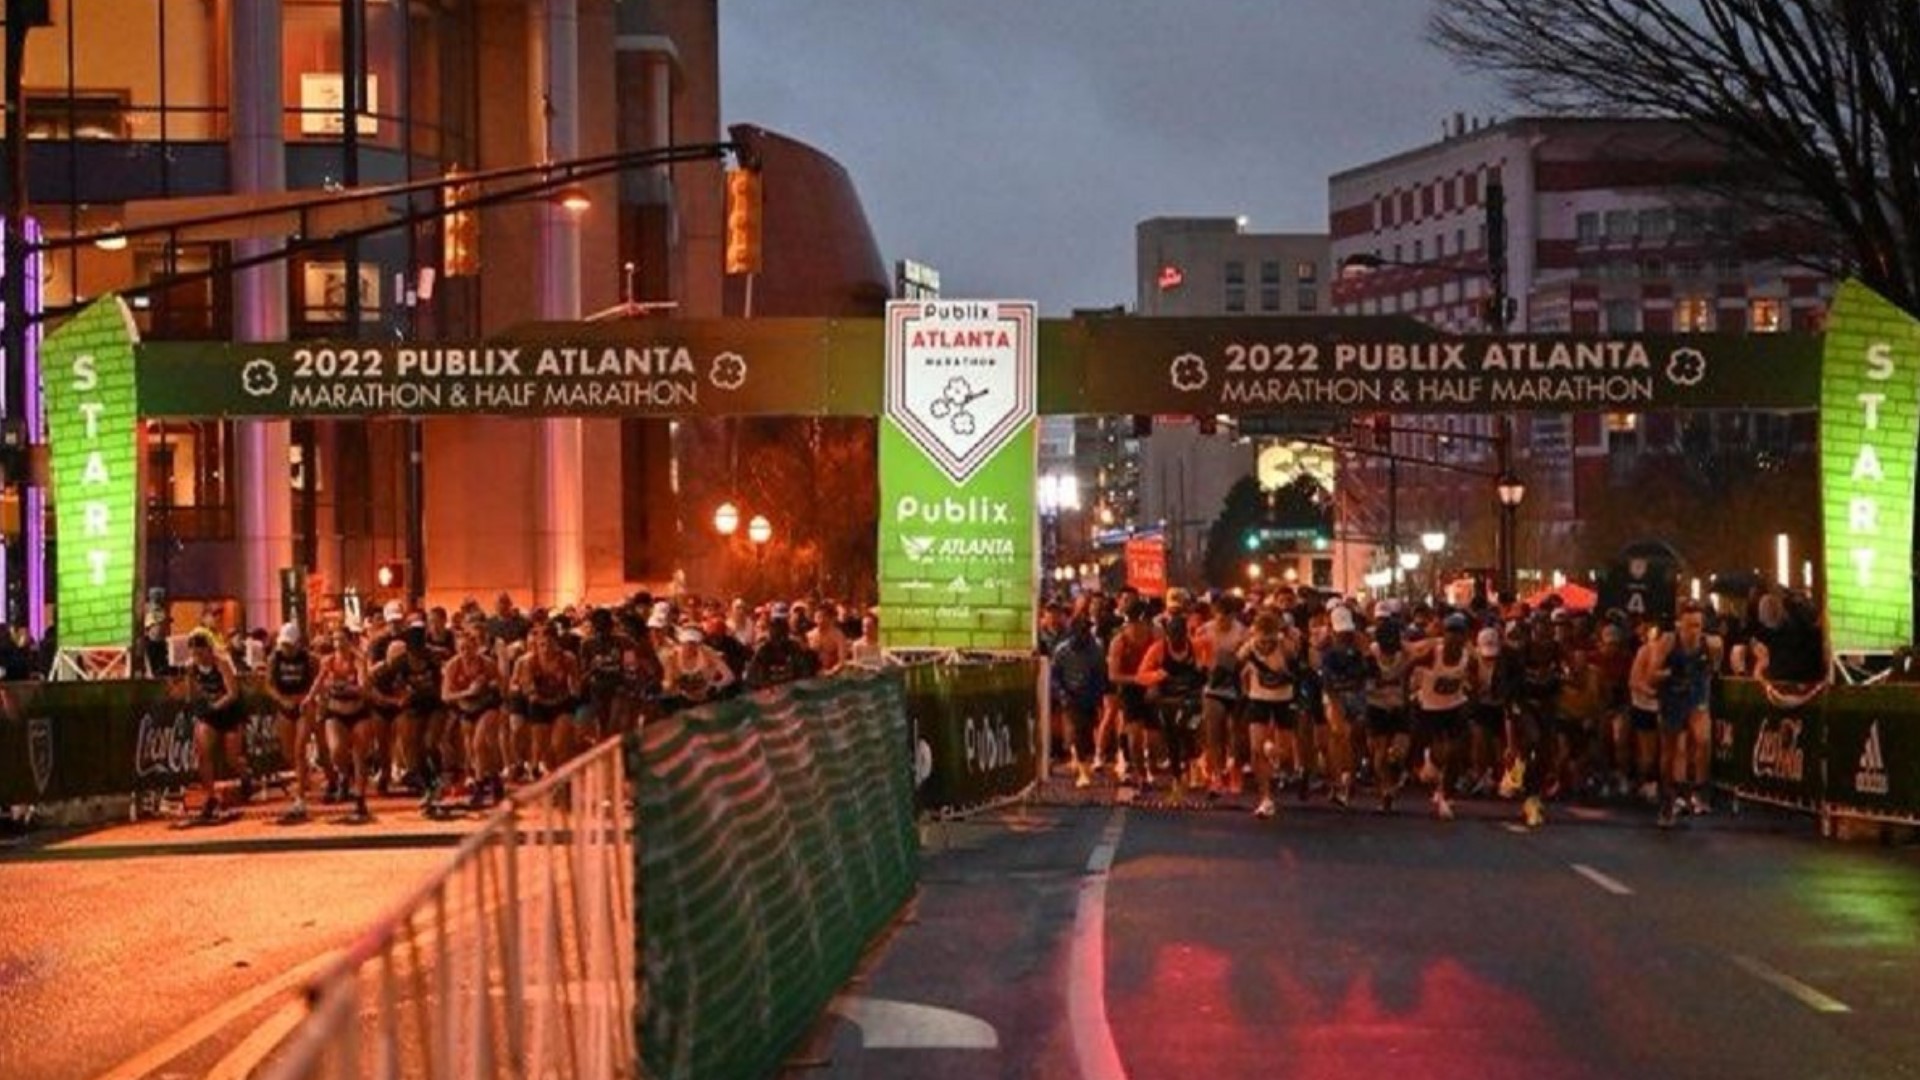 Publix Atlanta marathon results